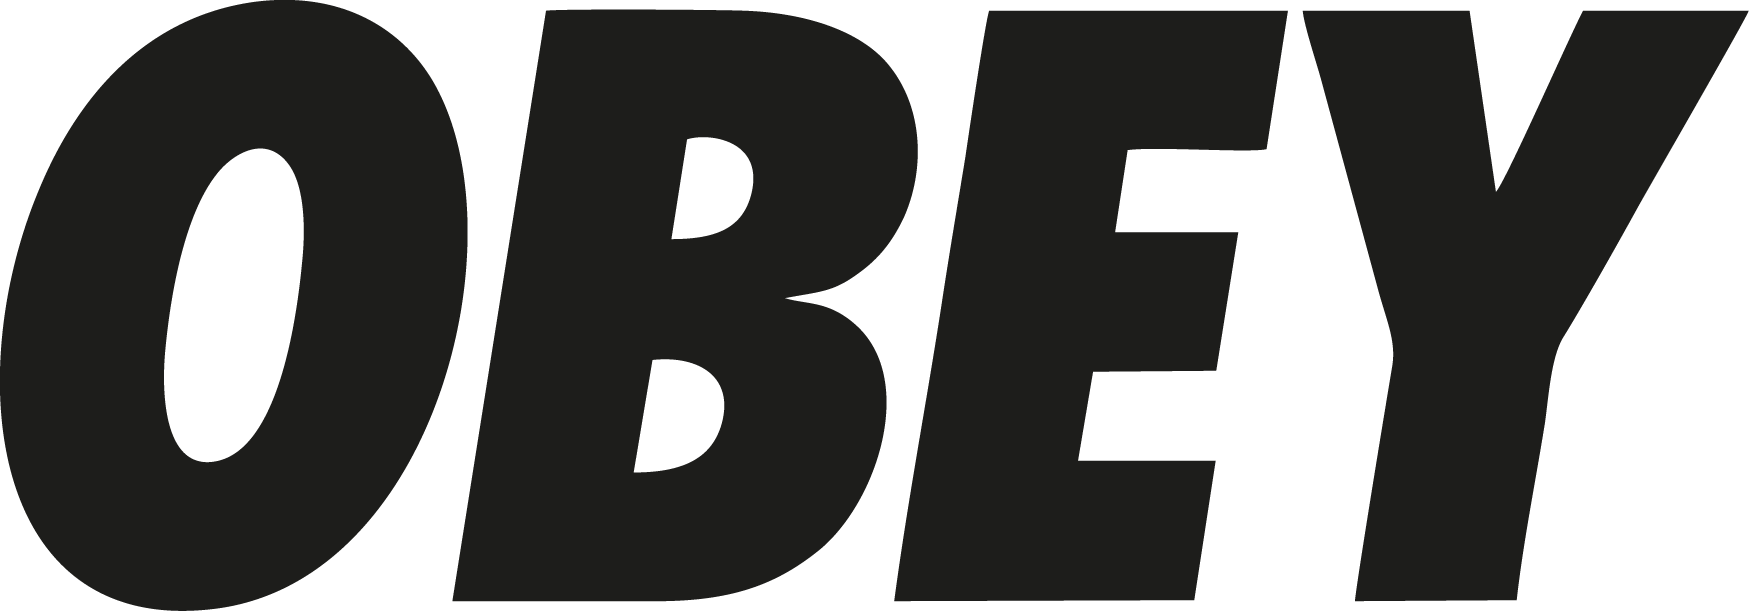 obey logo